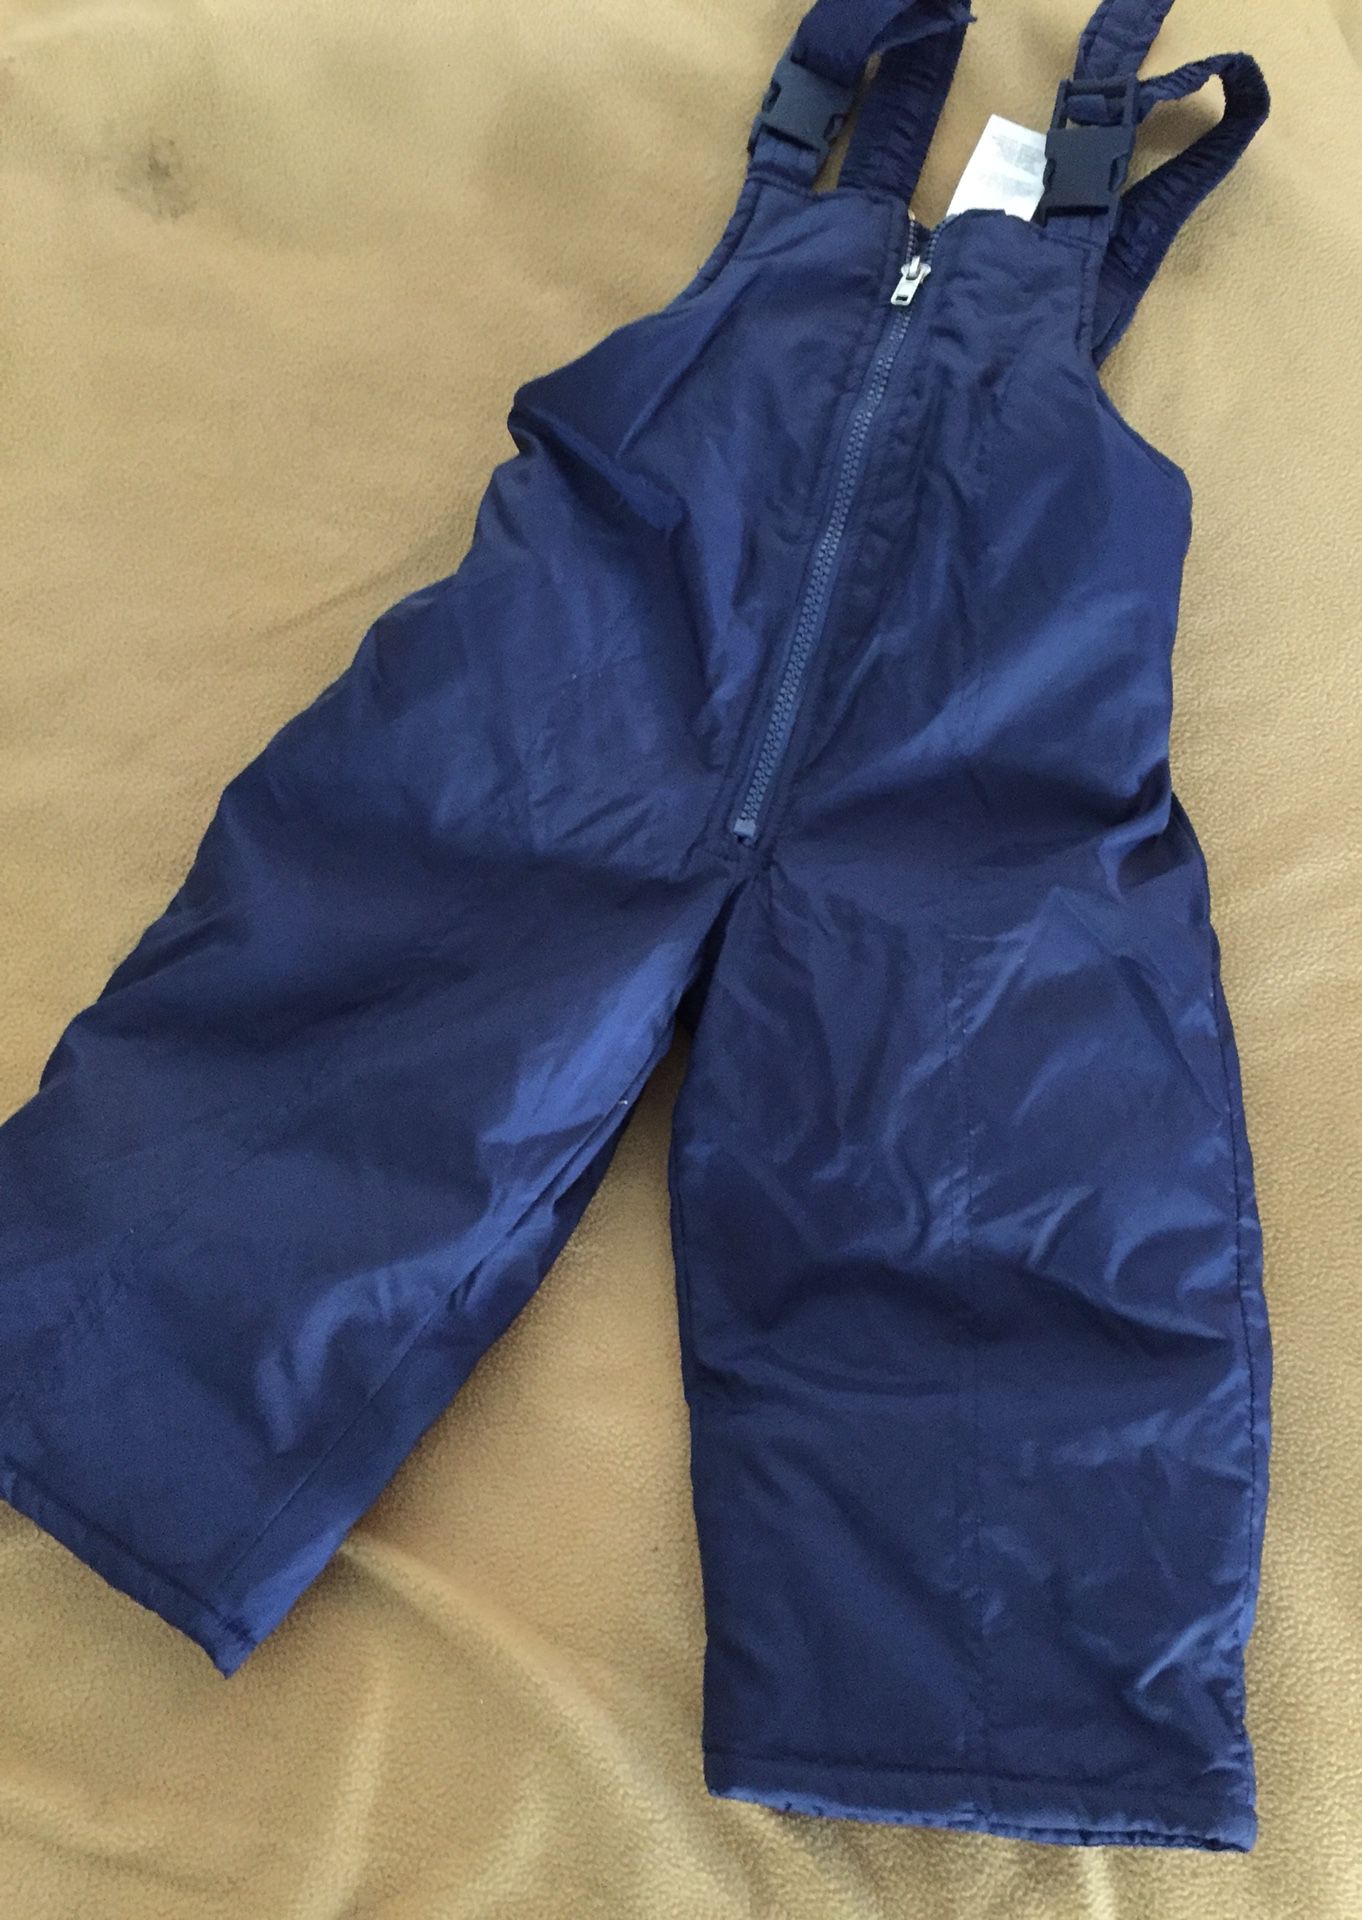 GUC 2T Unisex (Boy / Girl) Blue Snow Suit Bib Jumpsuit Jumper Overalls